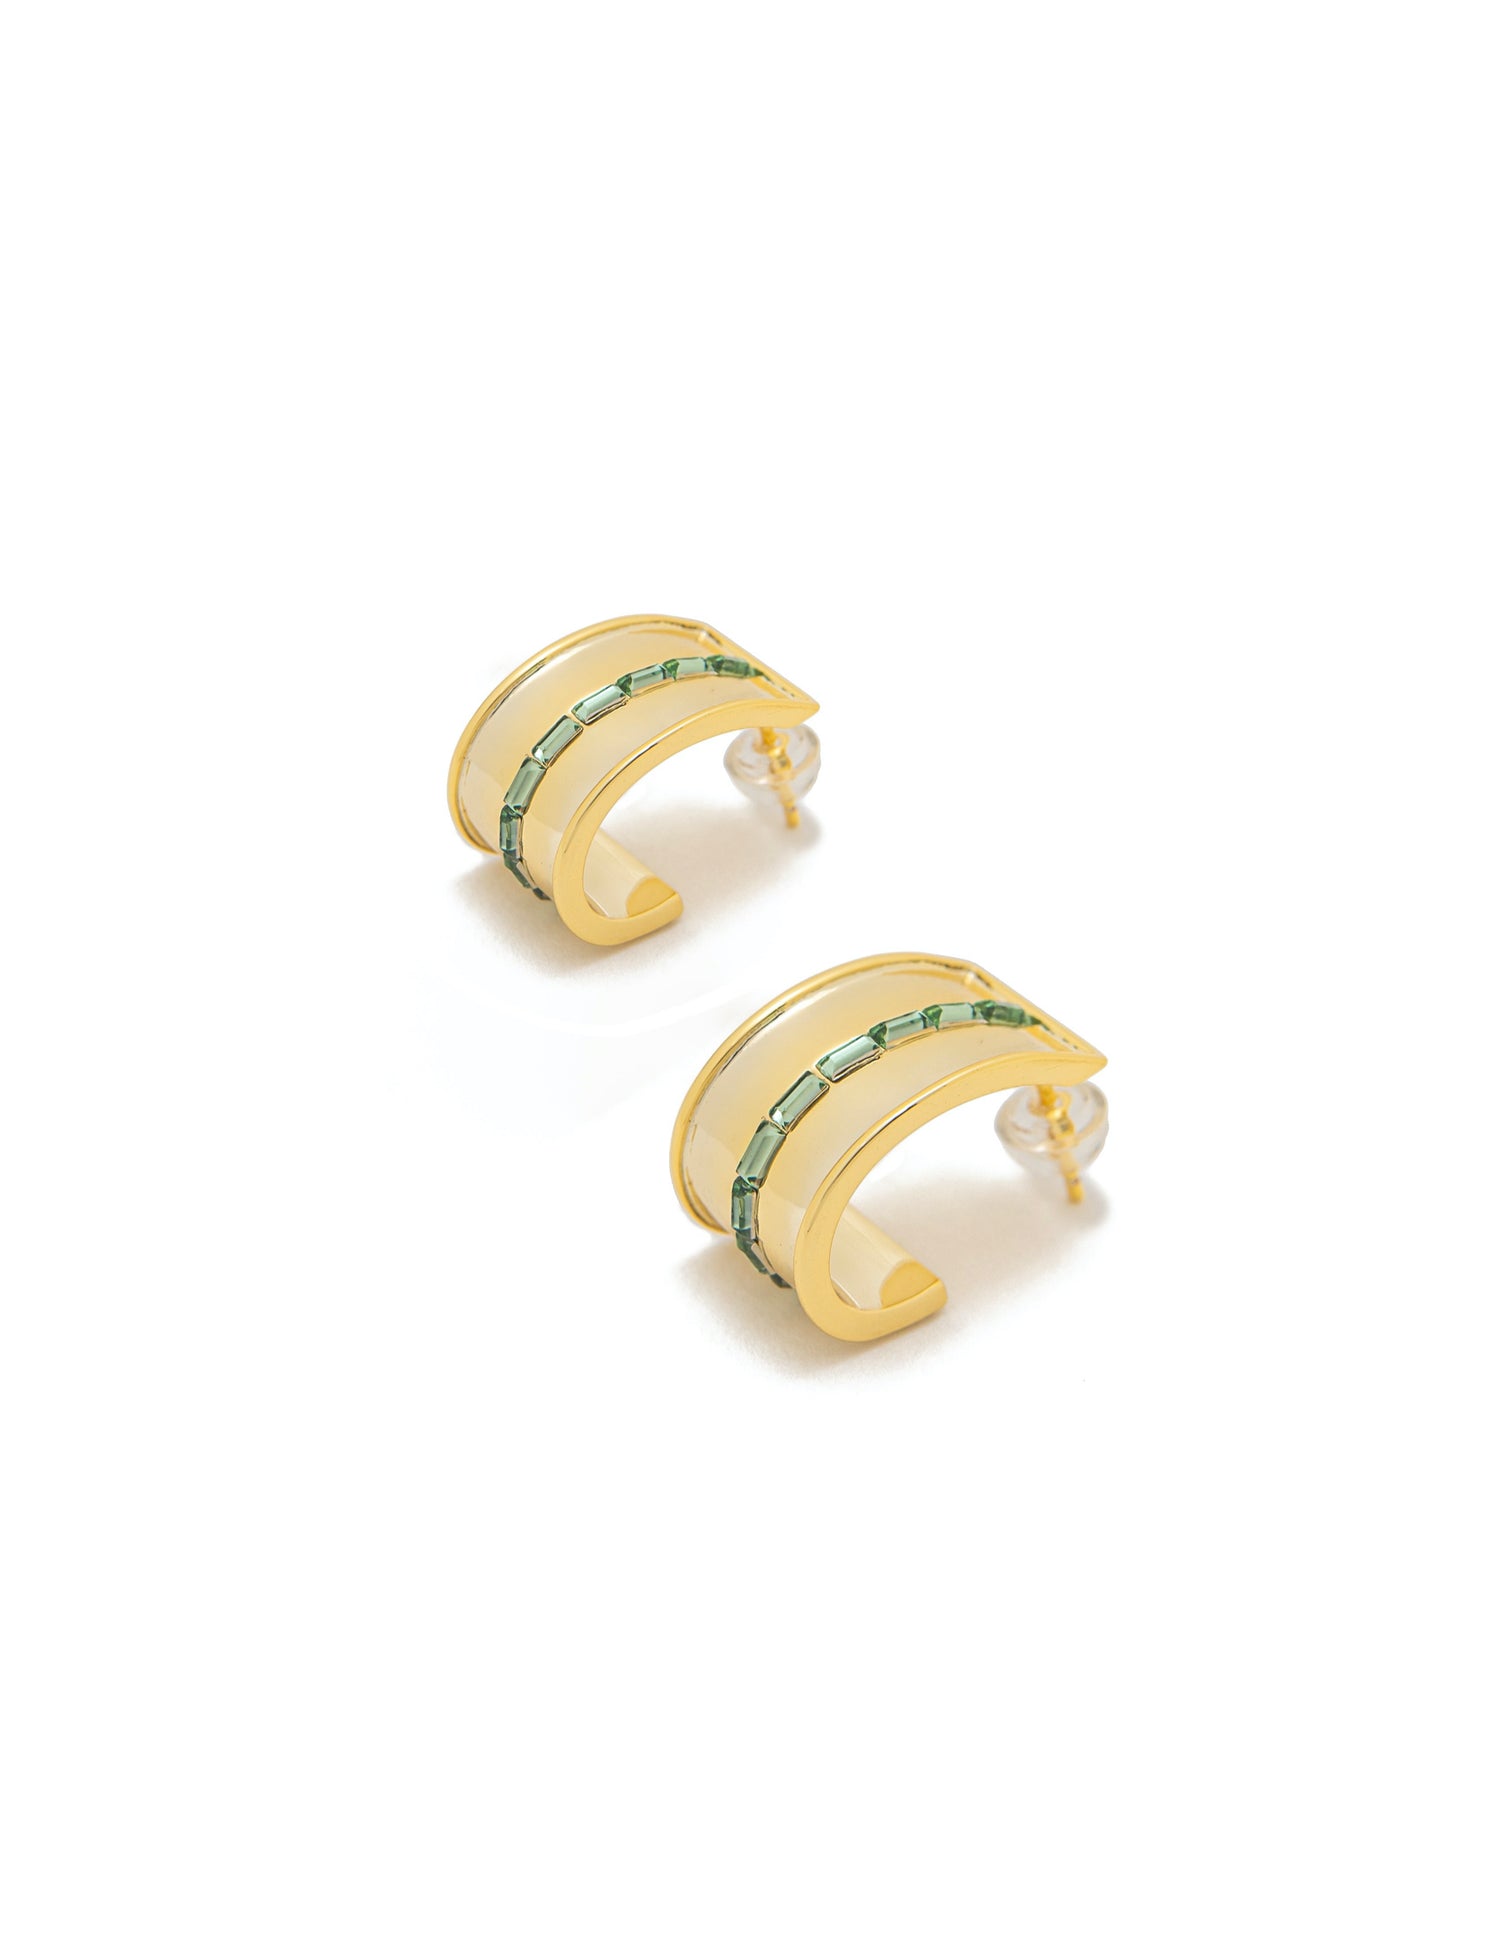 Light Green Multi Stone Gold Cuff Earrings